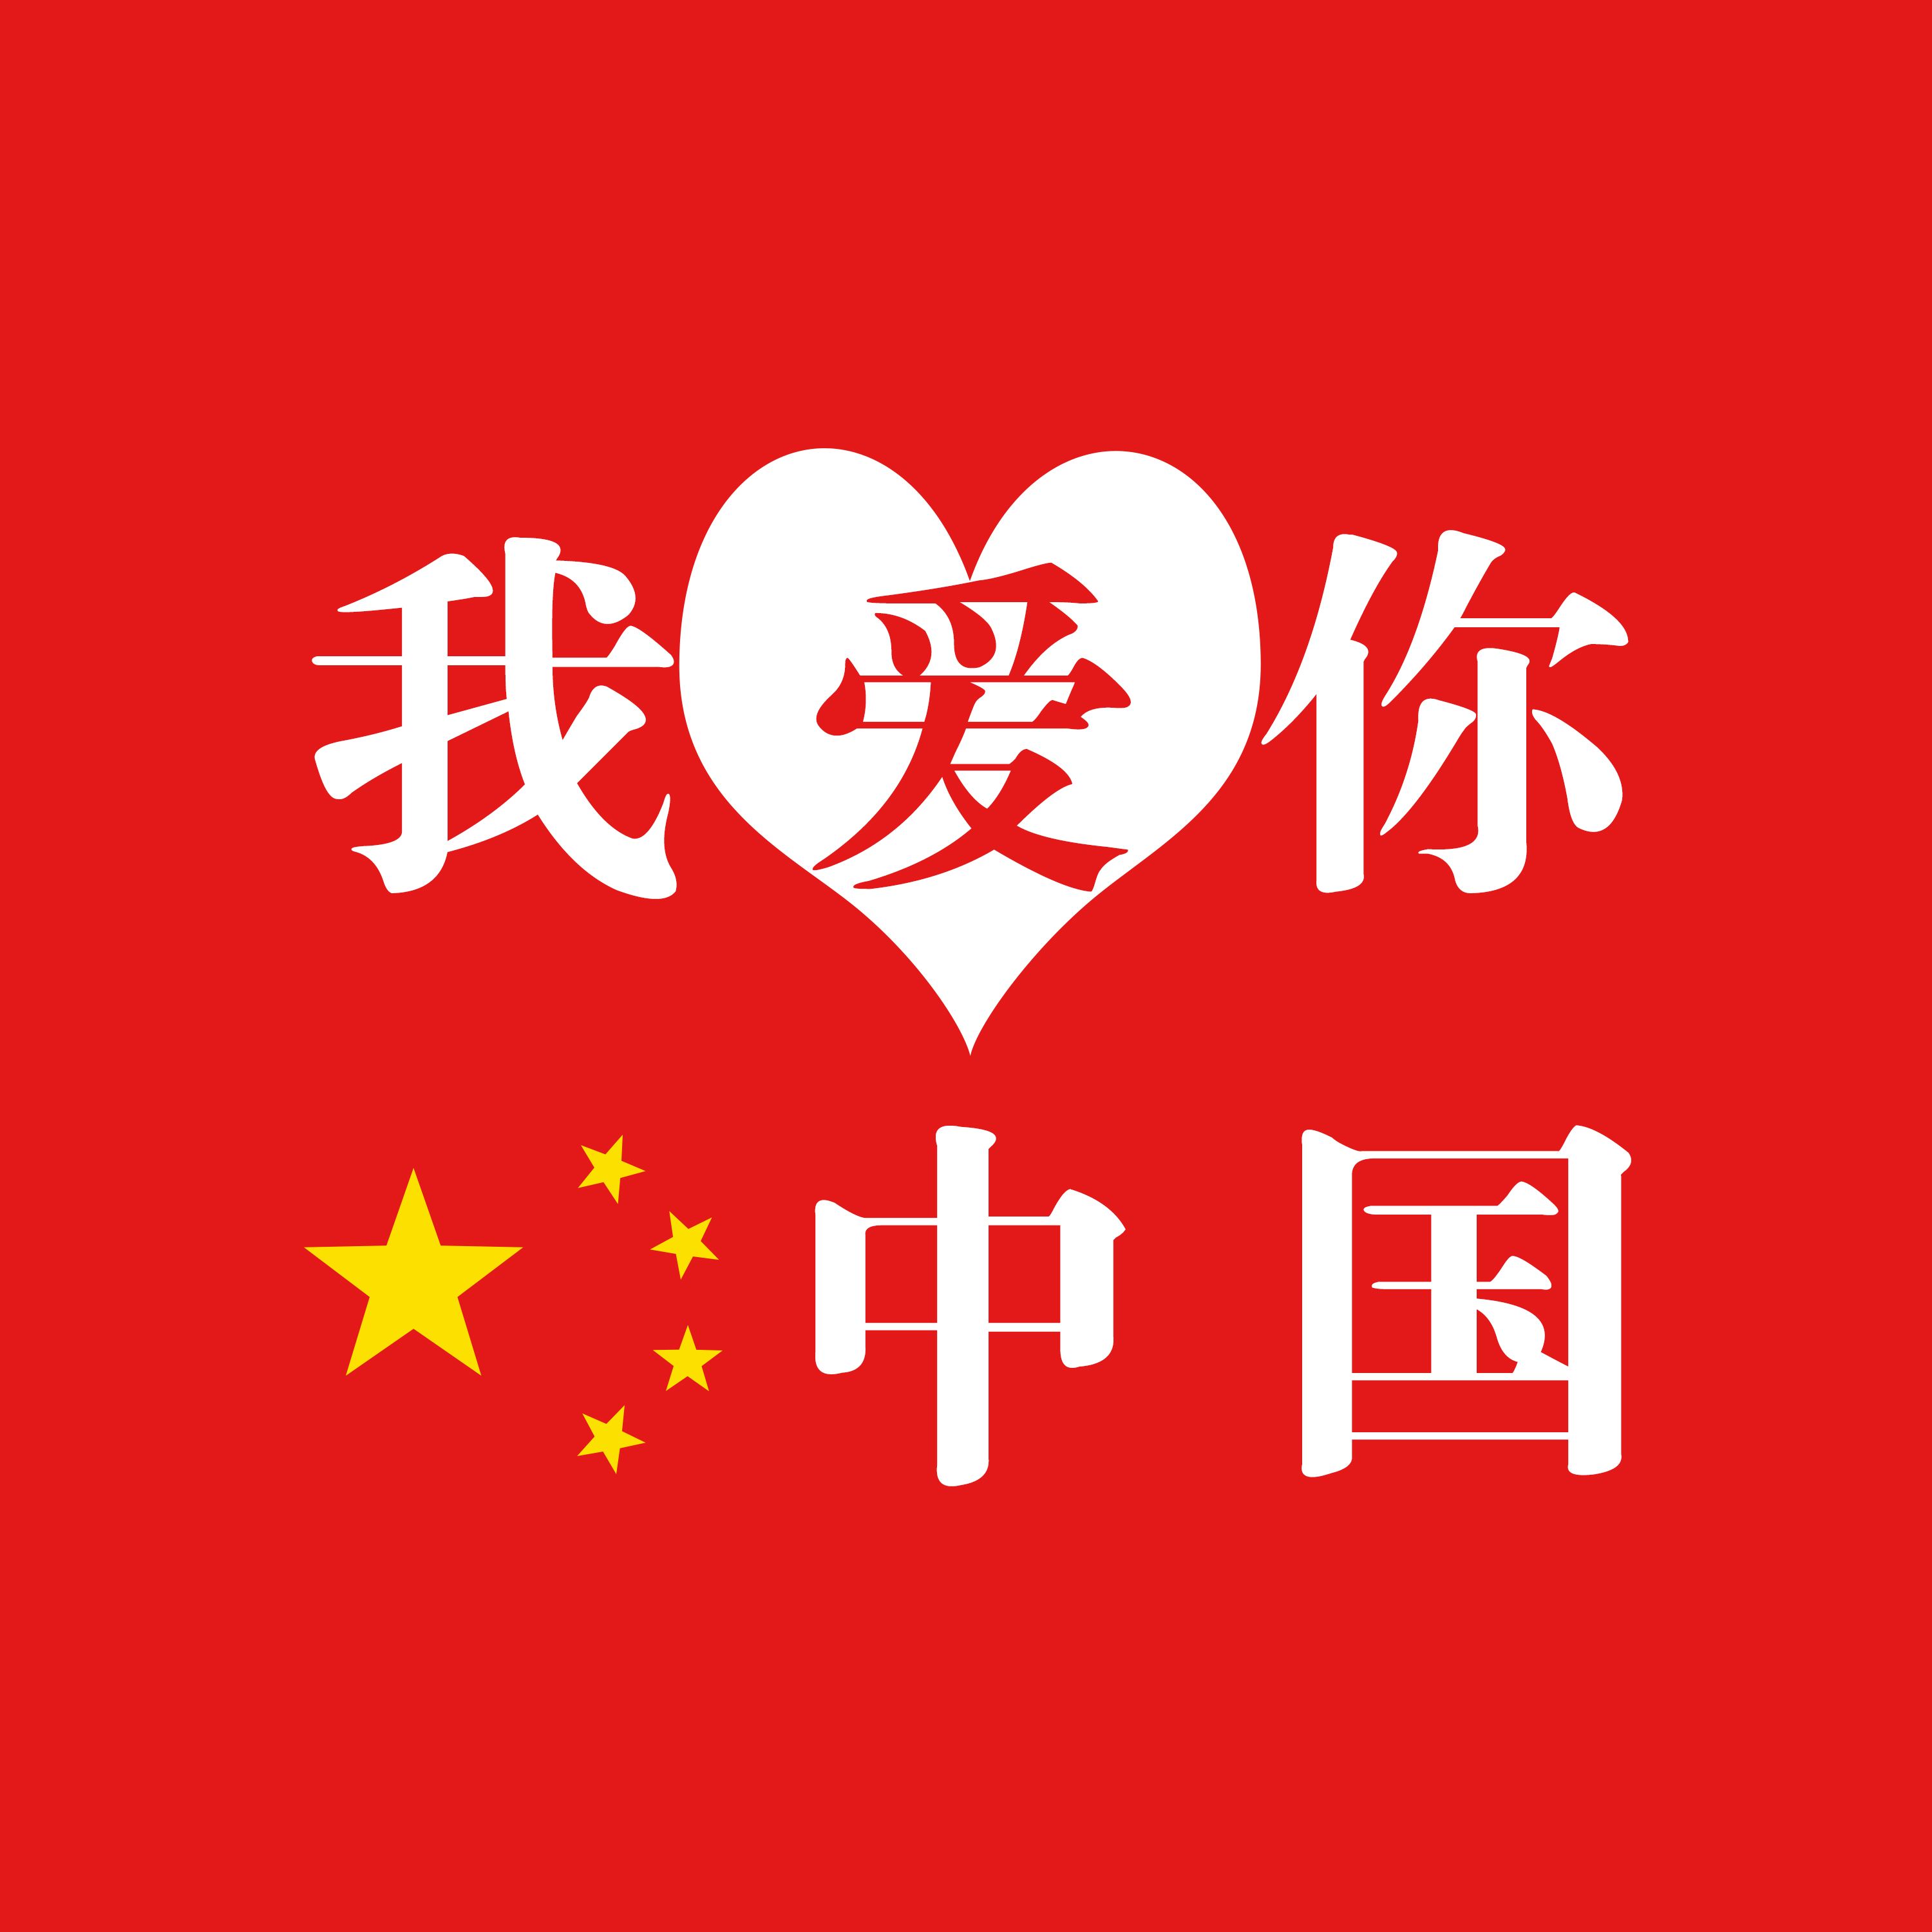 我爱你中国 (2)